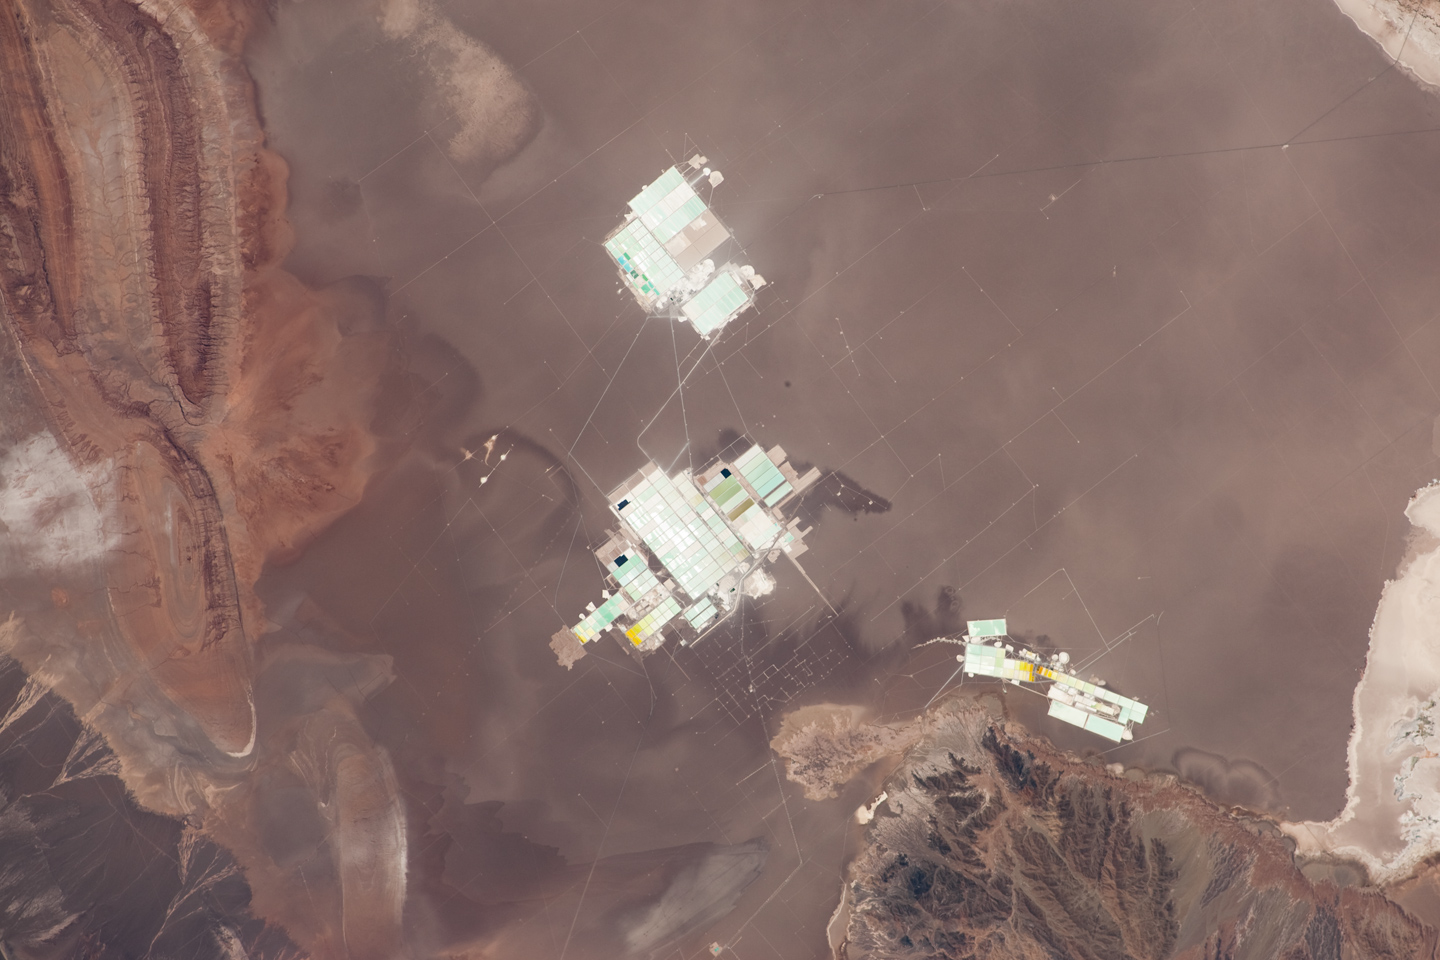 Evaporation Ponds, Salar de Atacama, Chile  - related image preview